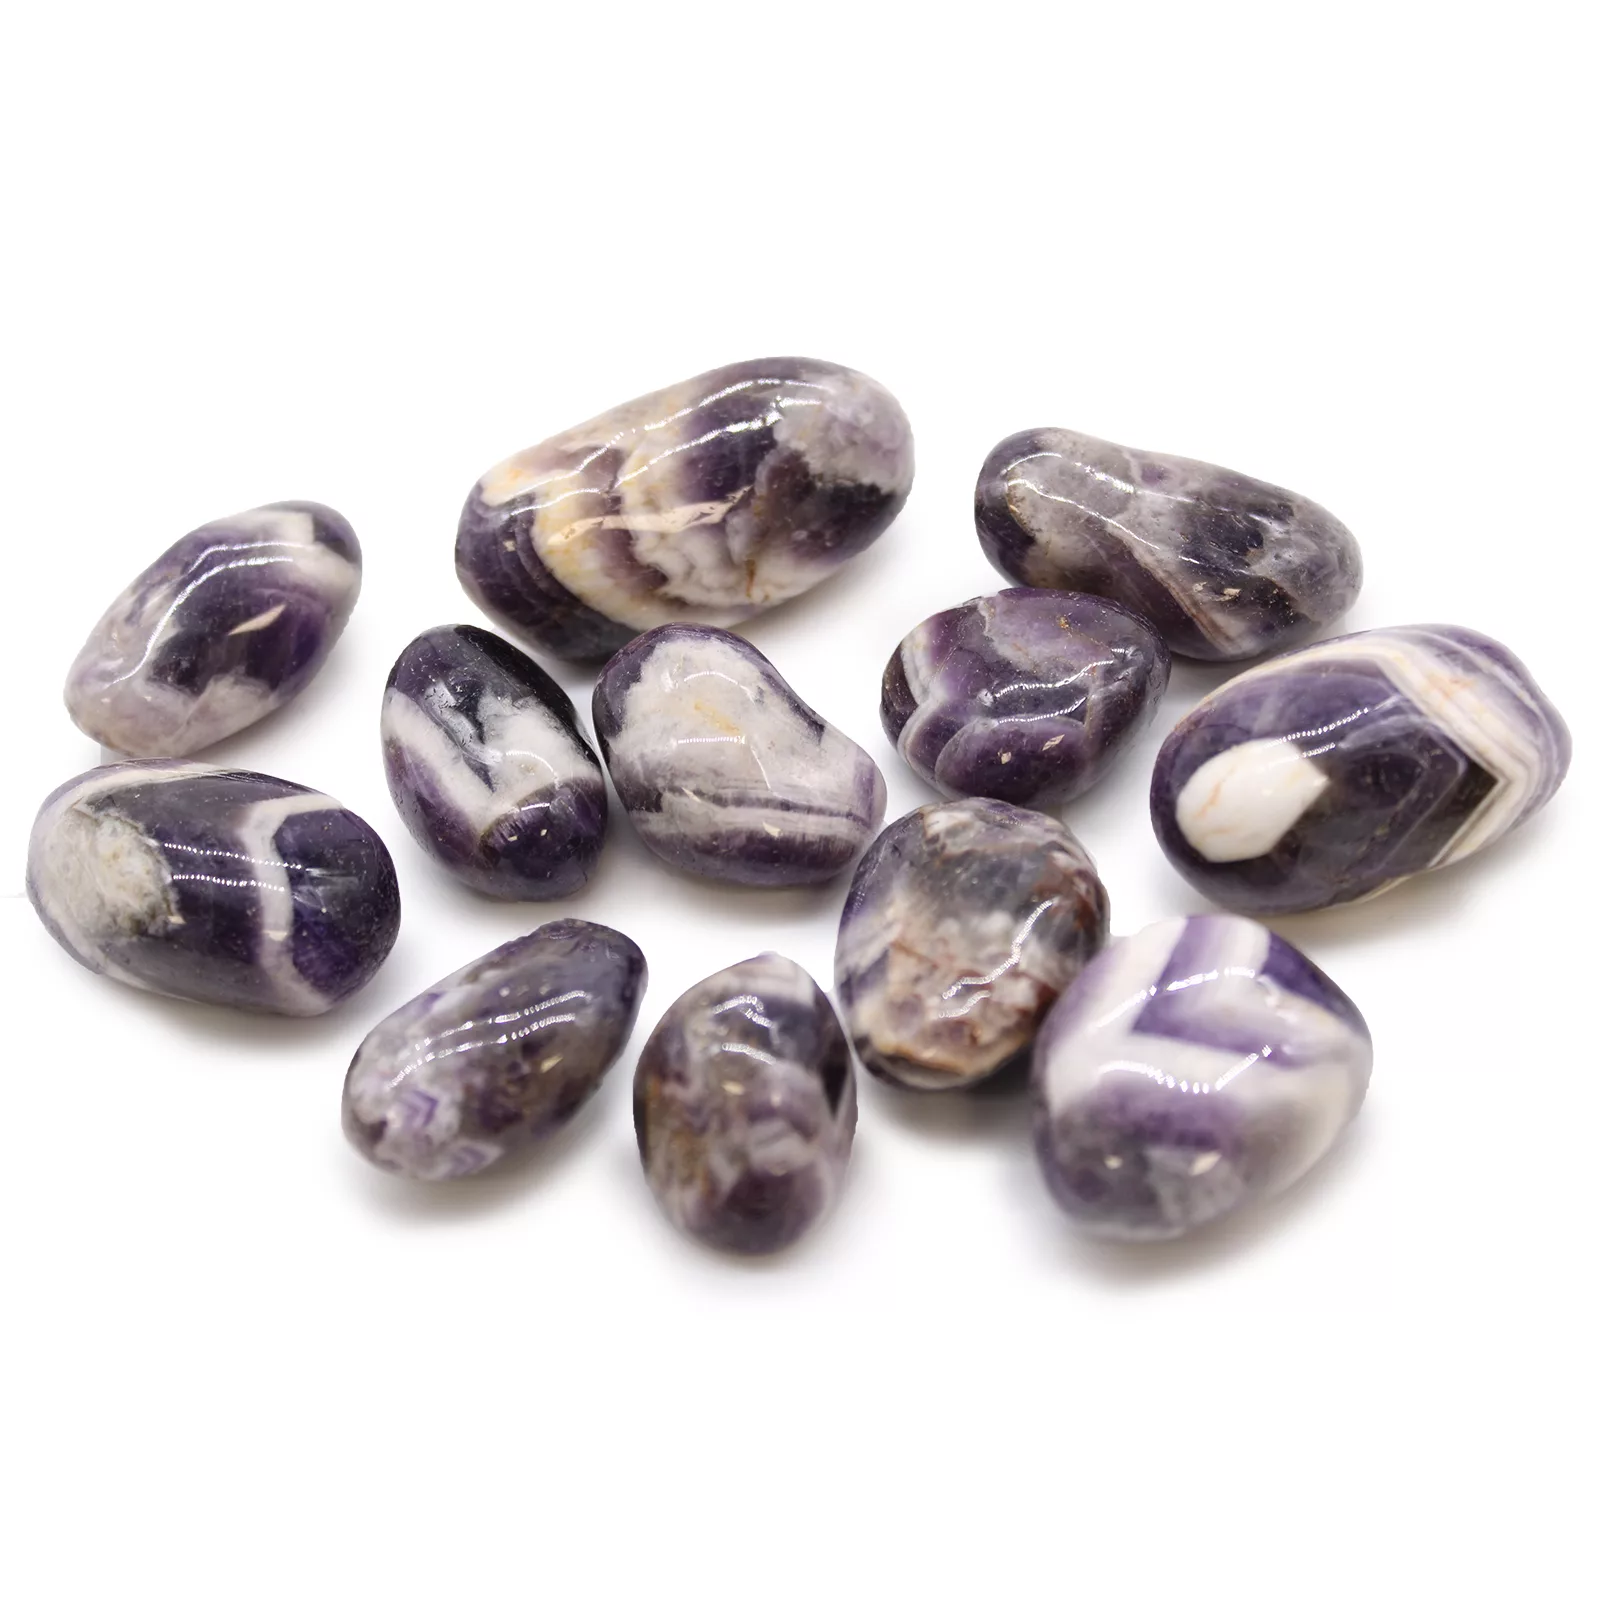 Medium African Tumble Stones